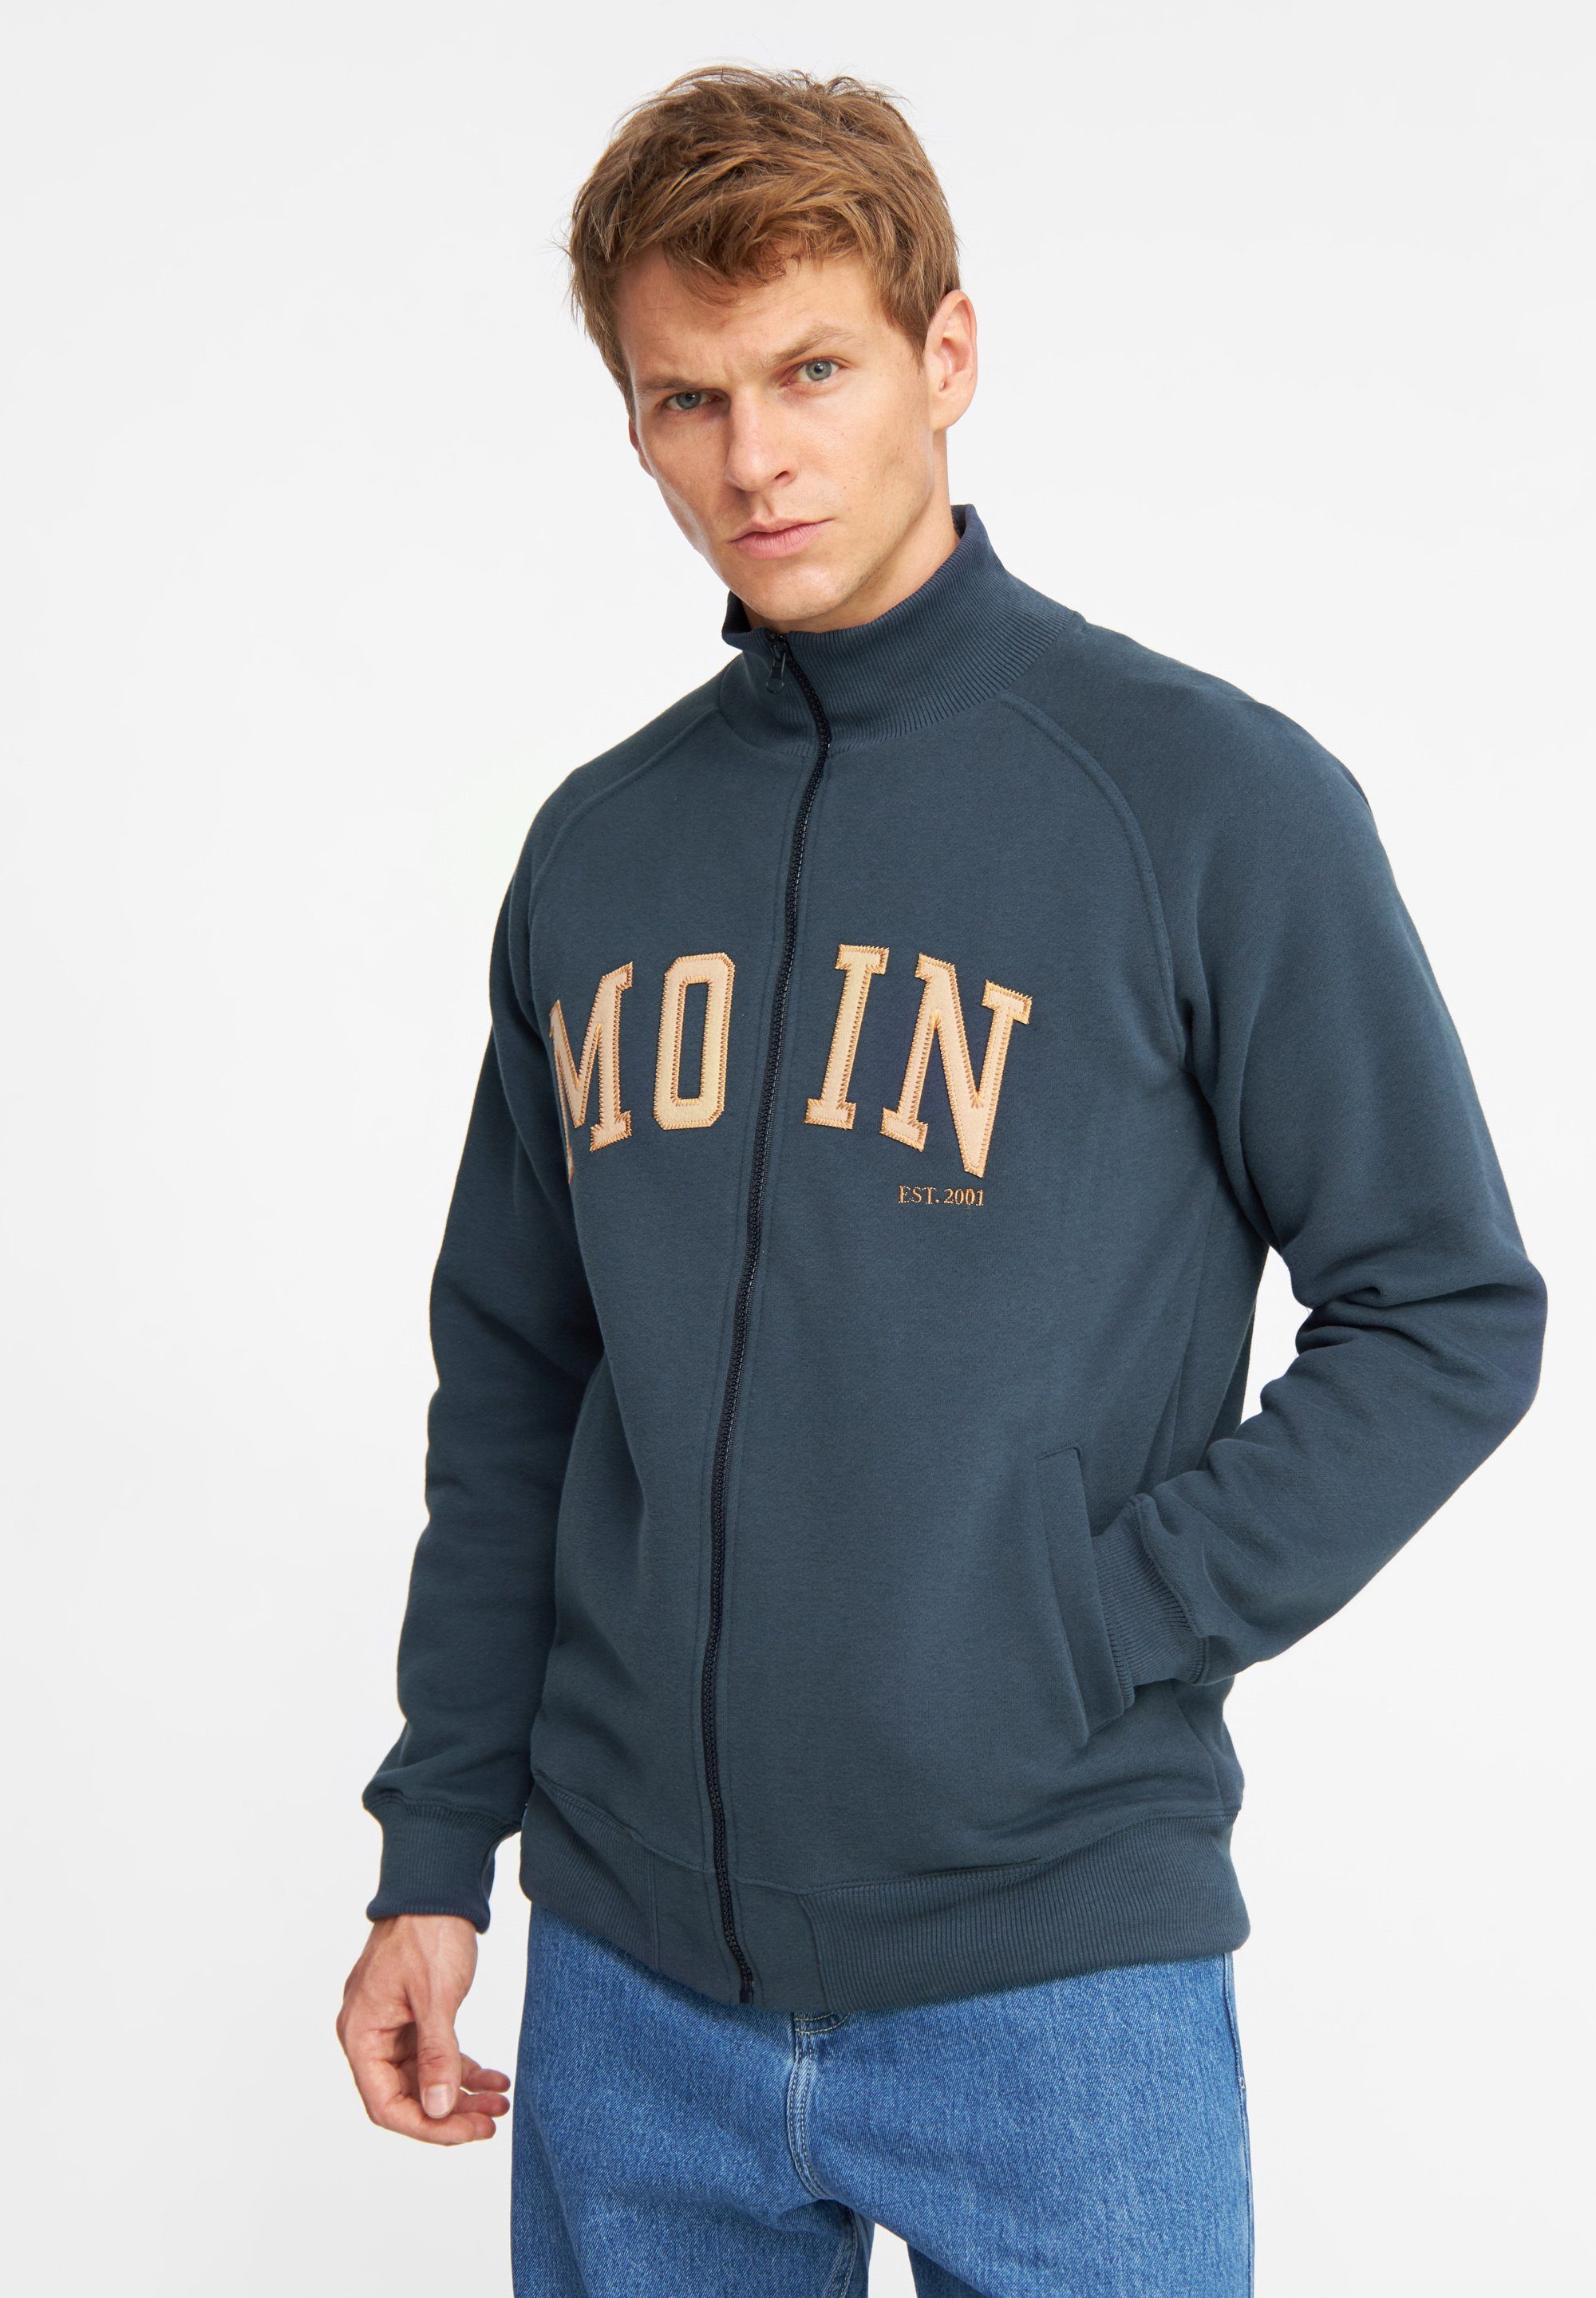 navy MOIN Sweatshirt in Derbe Portugal Made weich, Super